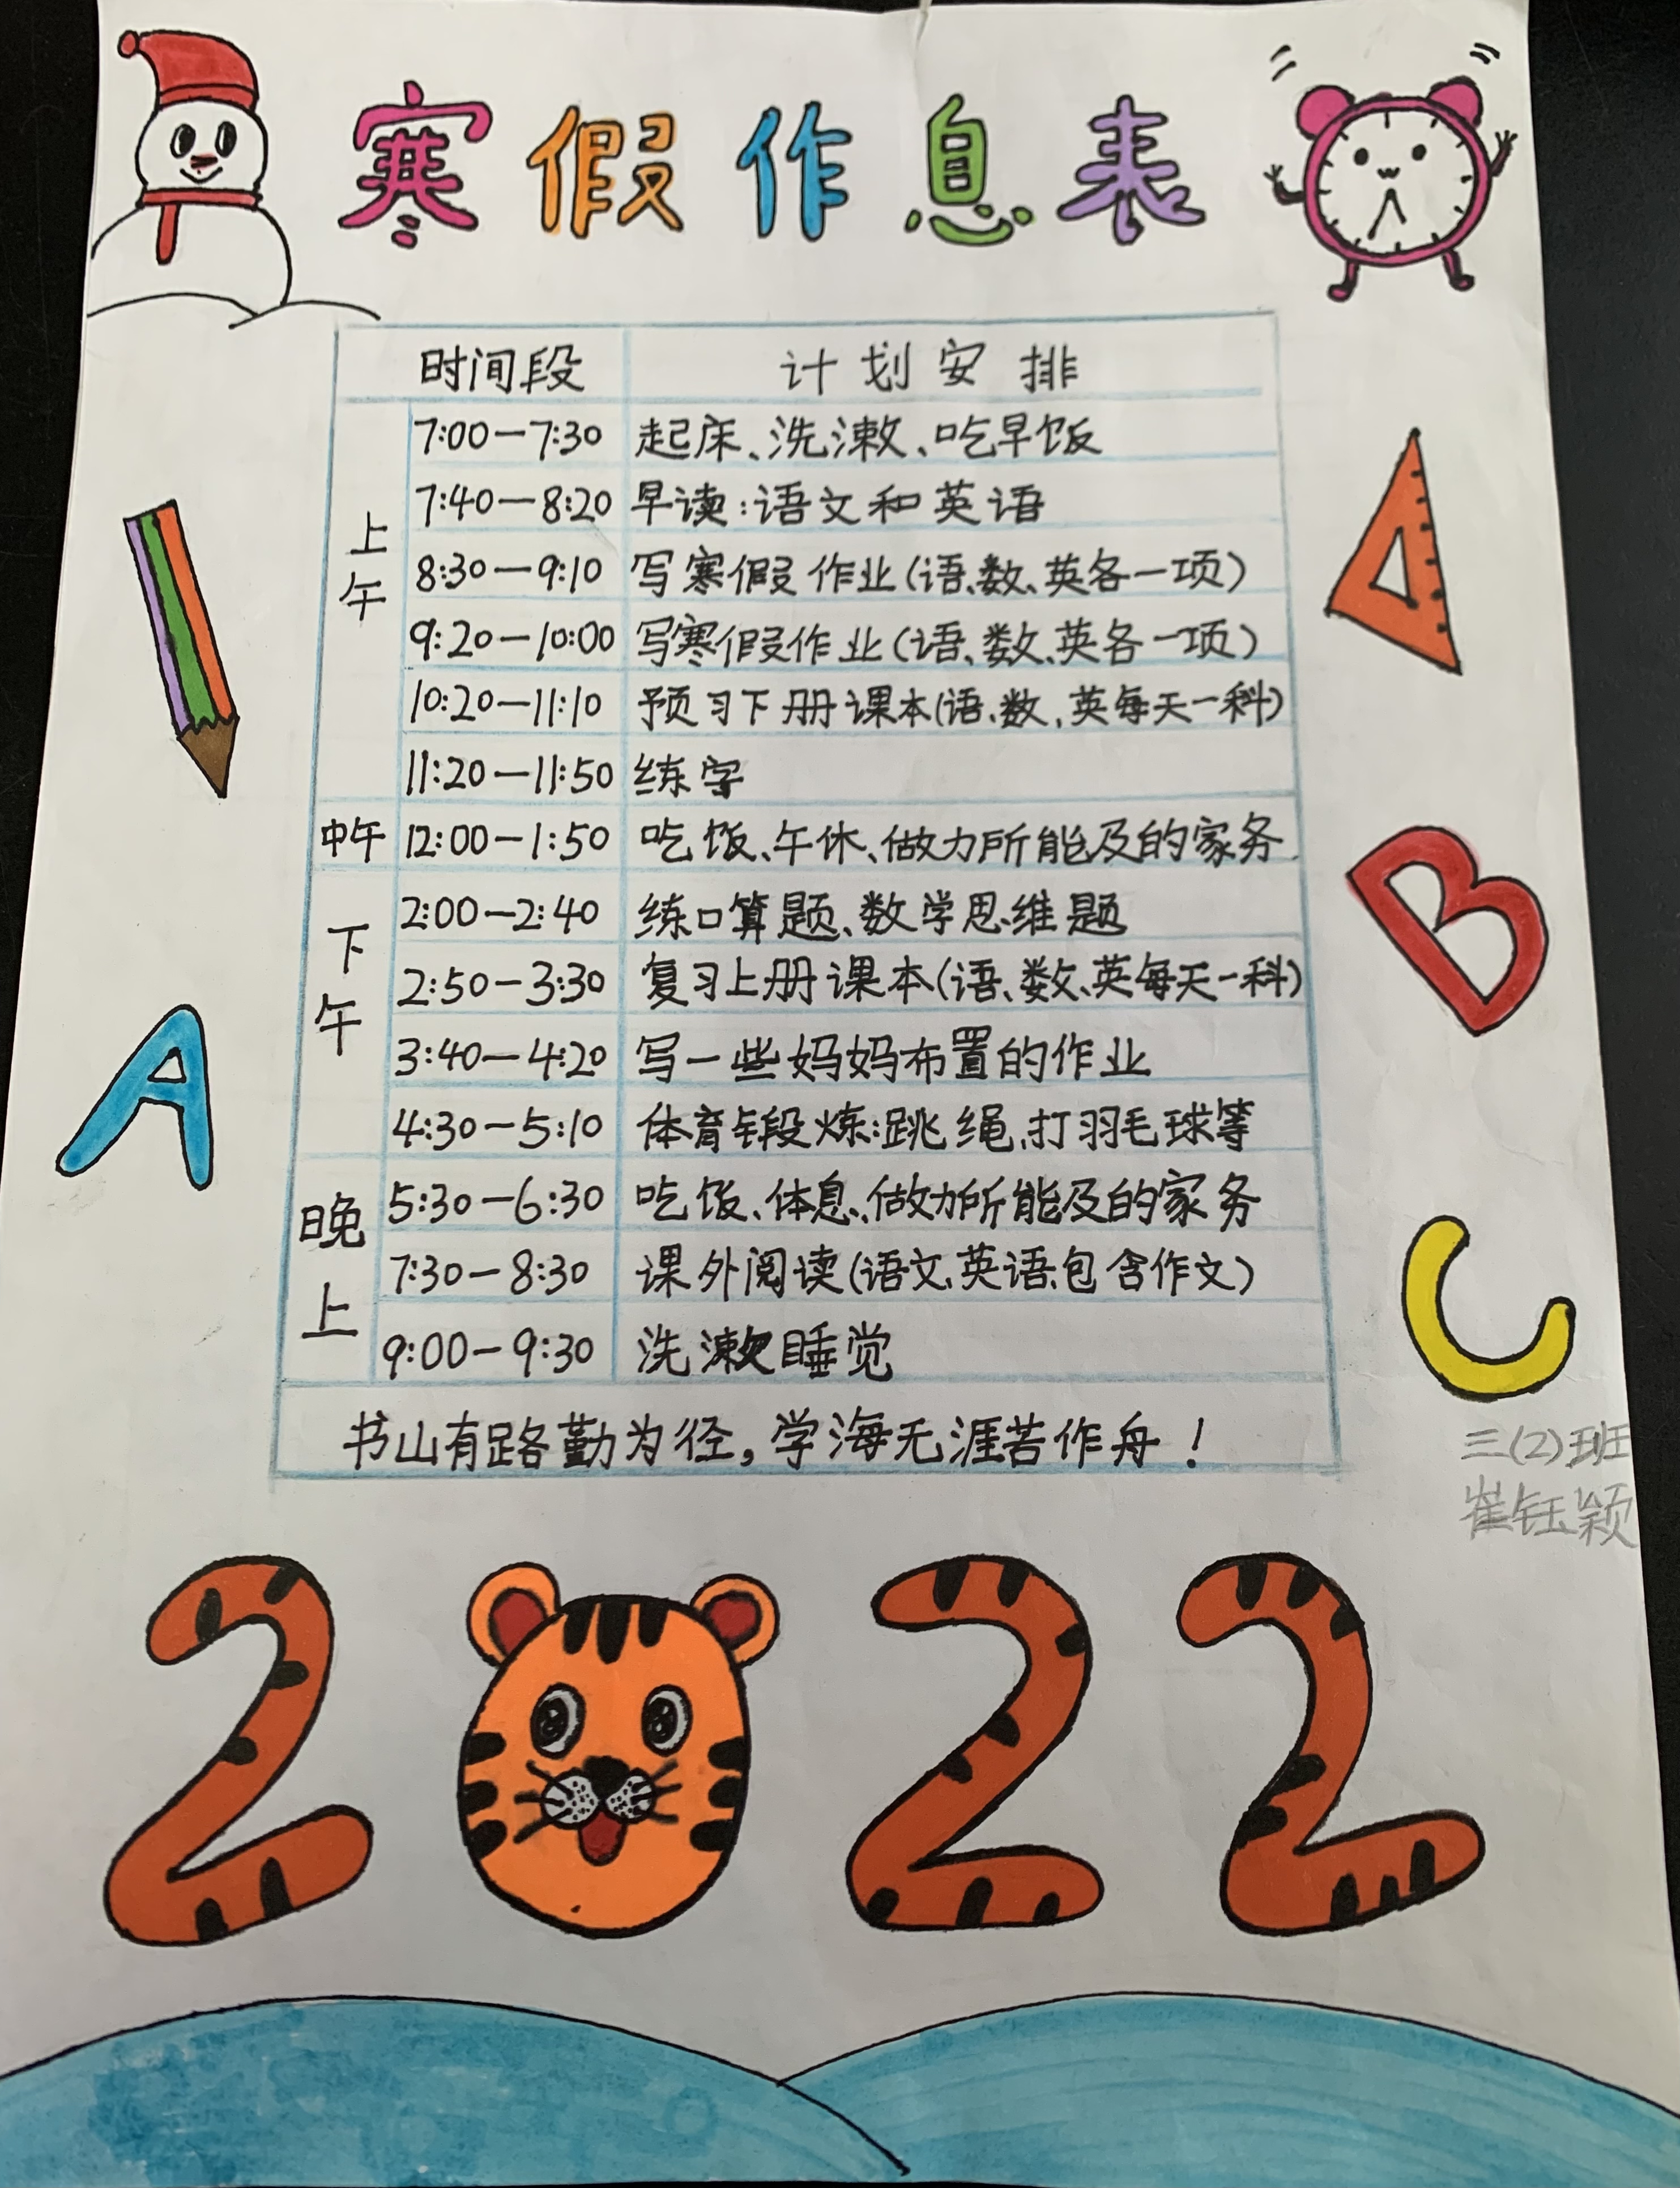 我的时间我做主――郑州市管城区席村小学开展制作作息时间表活动